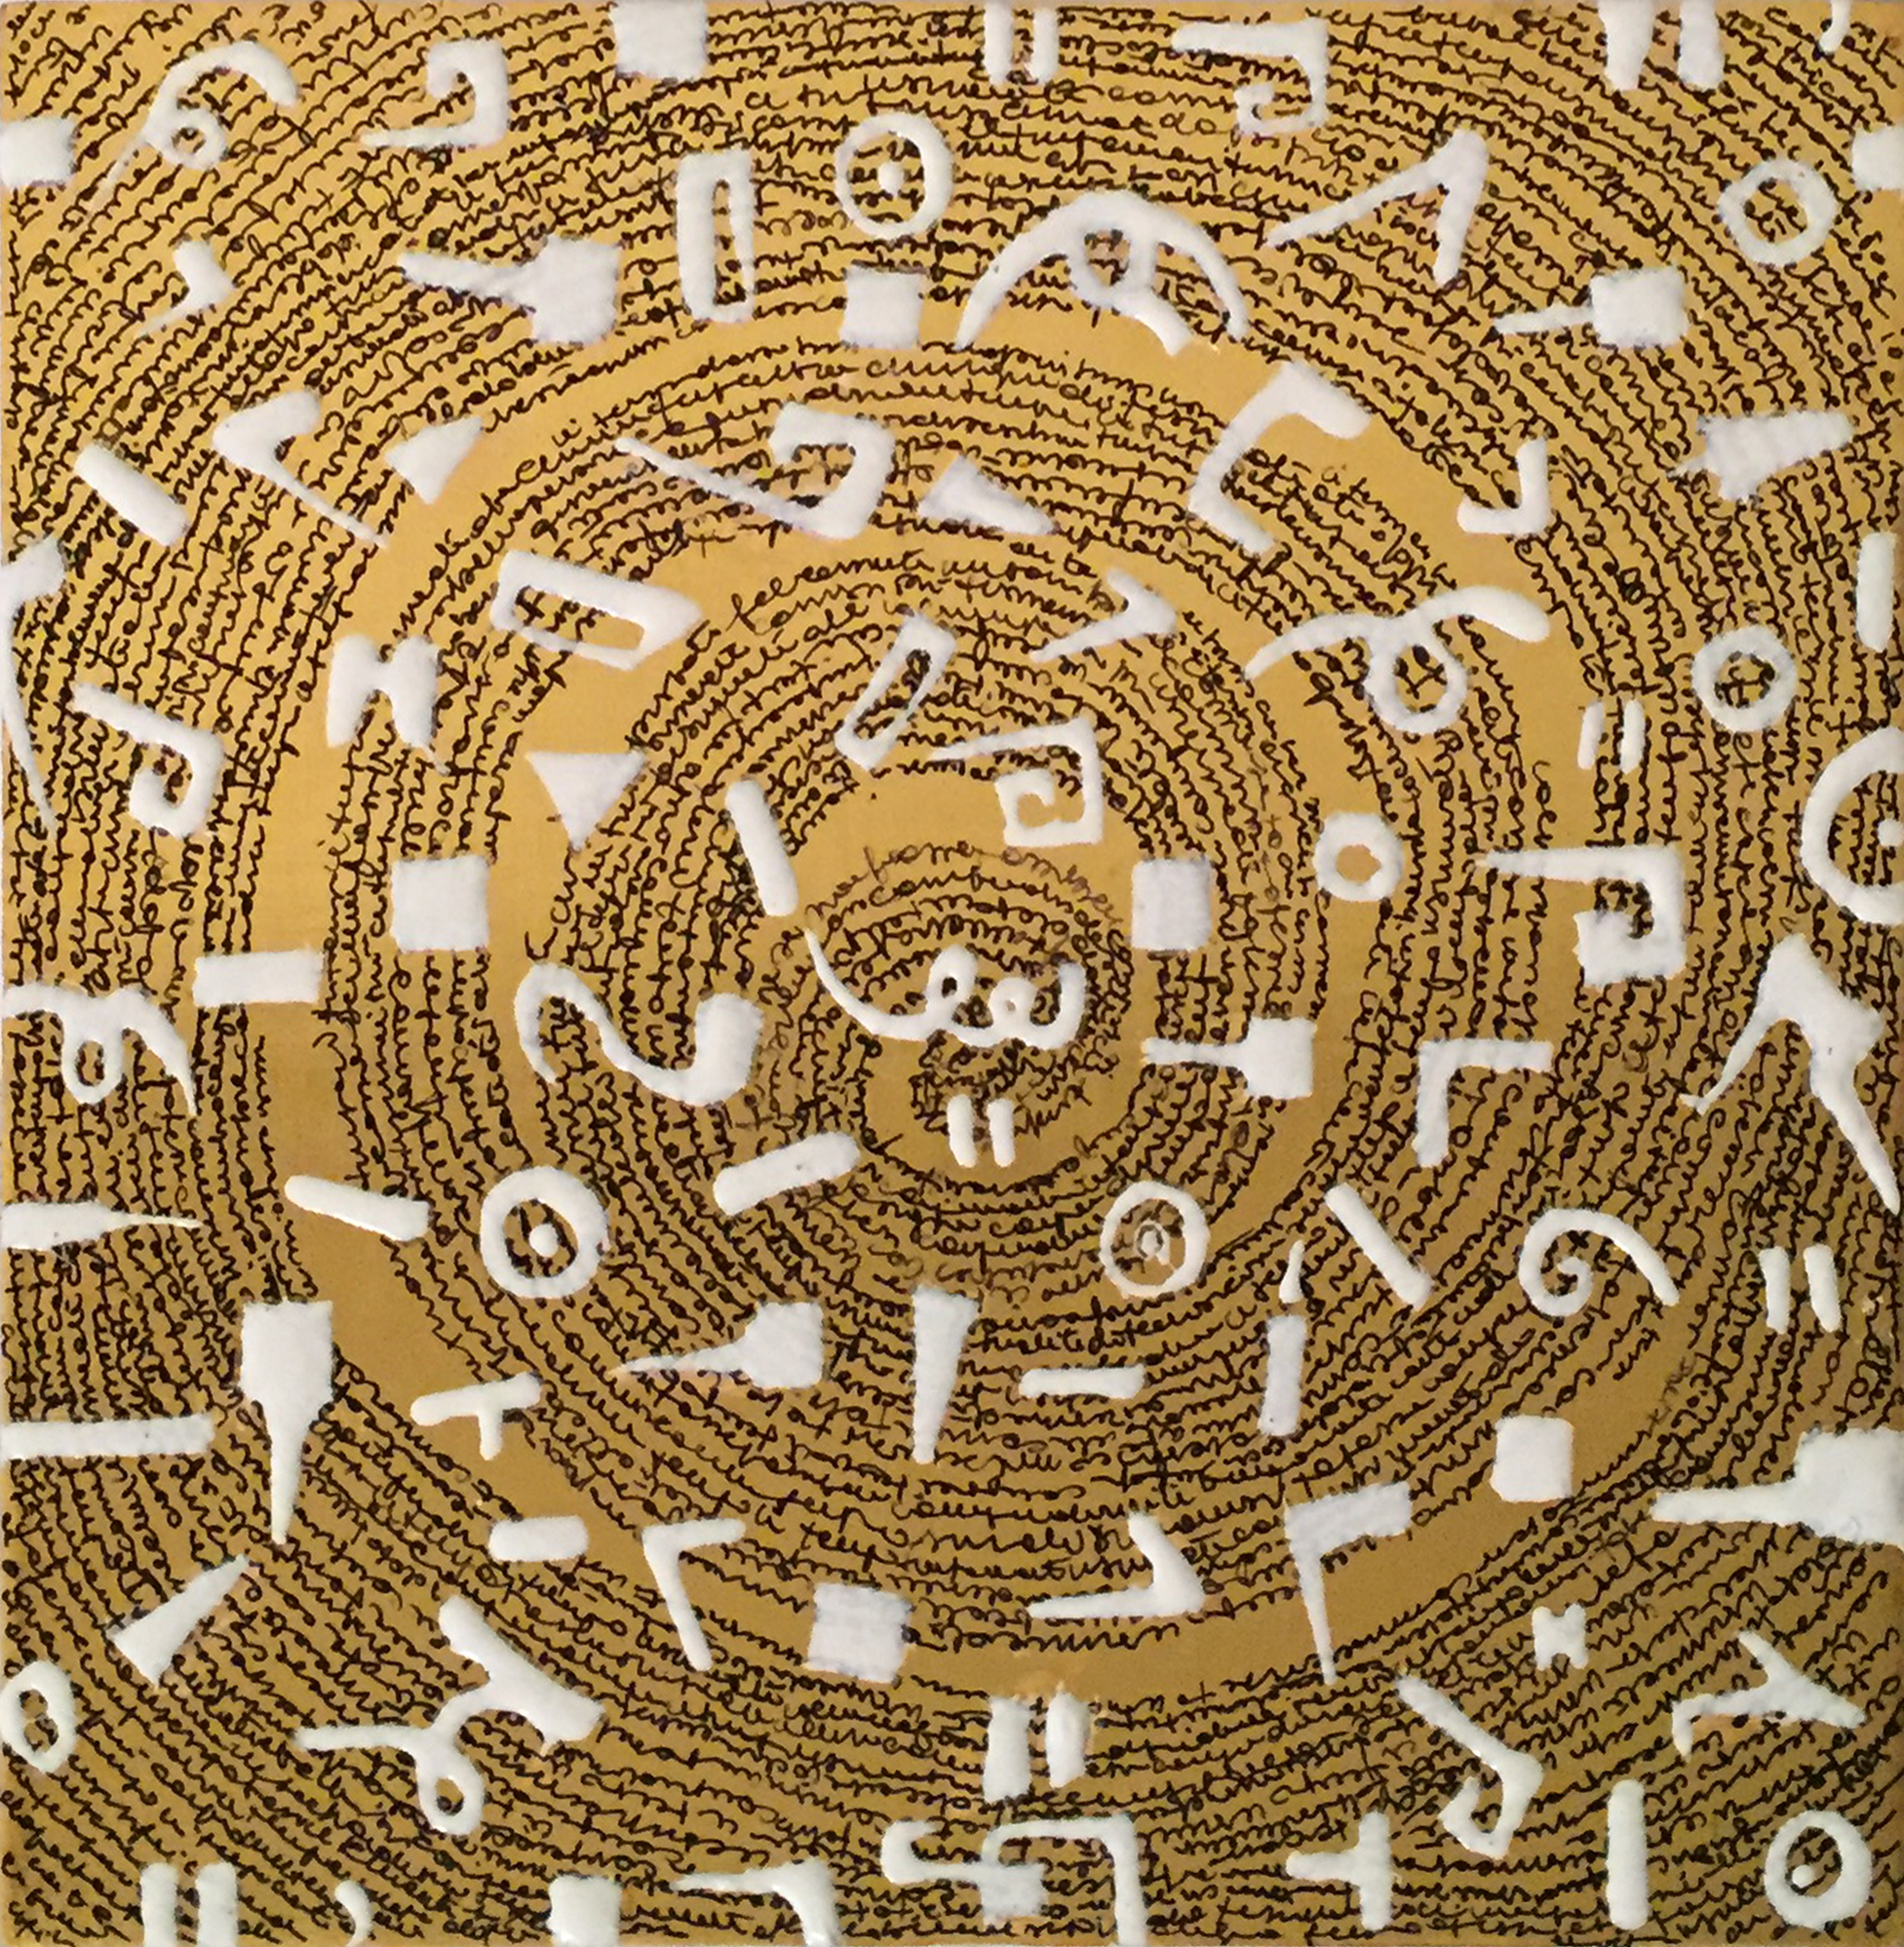 Tania Pistone, Rongorongo II, 2018, foglia d’oro, tecnica mista e scritta su tavola, 20x20 cm